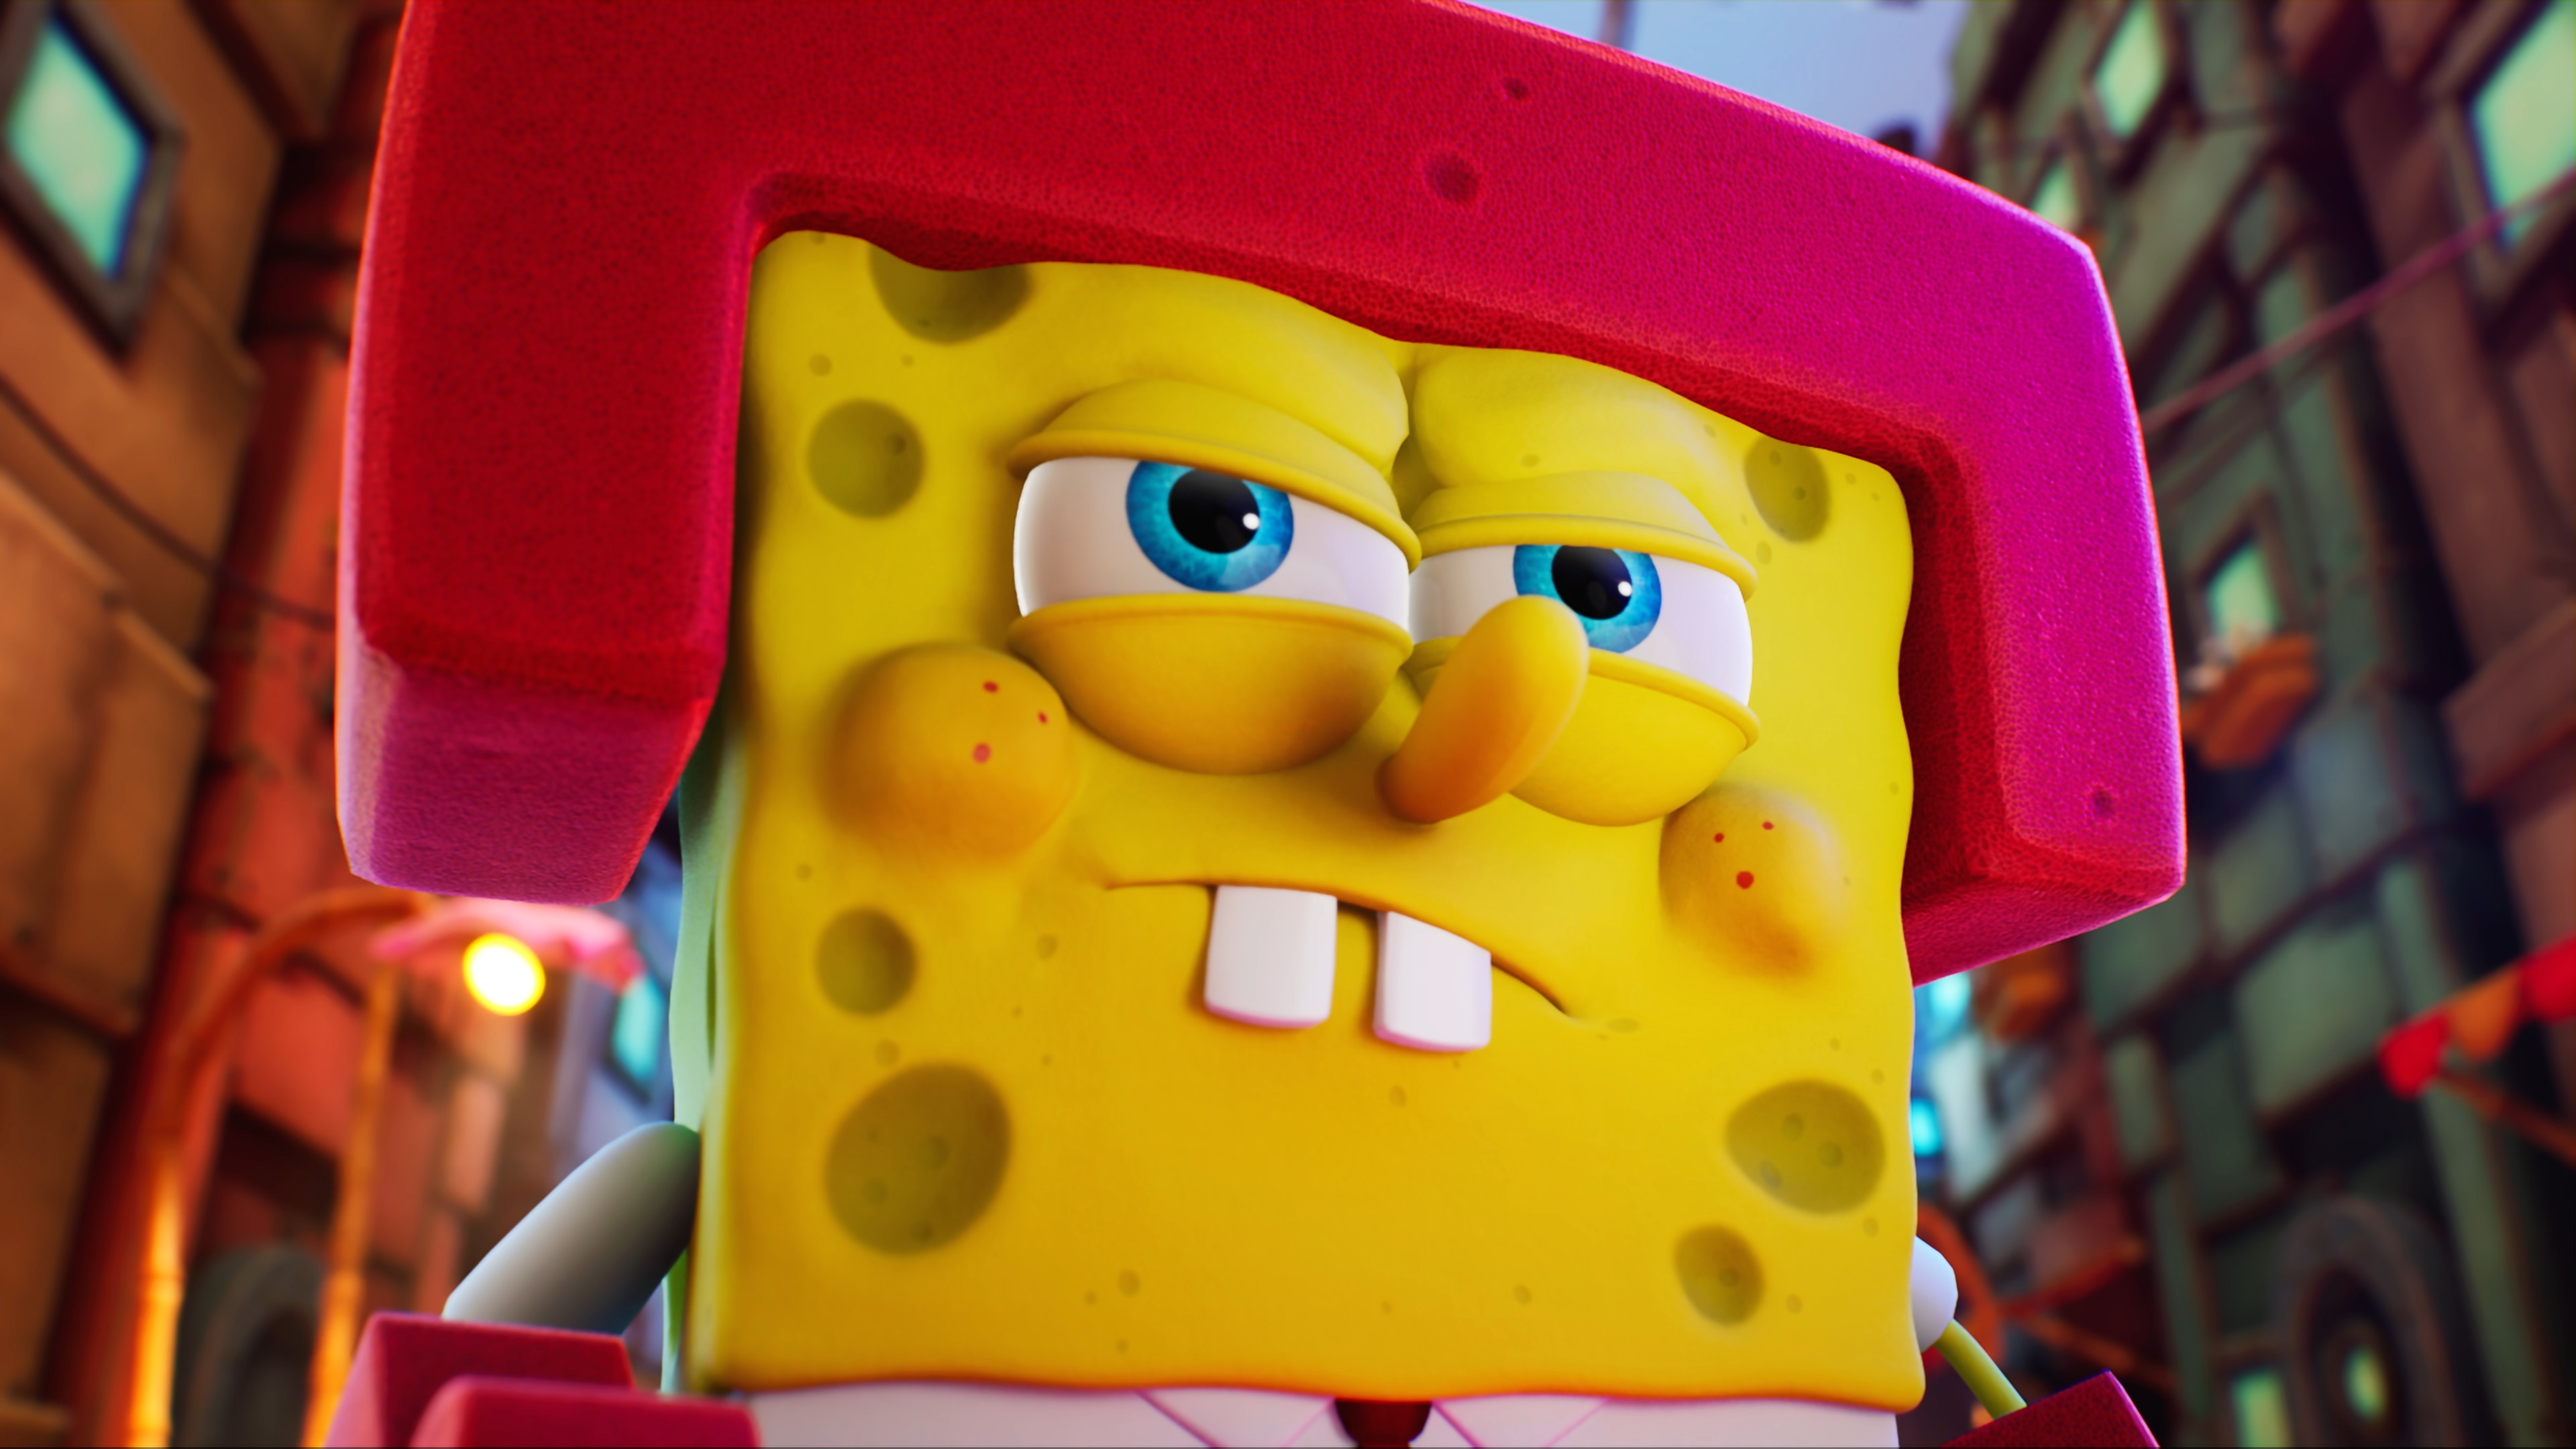 SpongeBob SquarePants: The Cosmic Shake review: all-ages fun